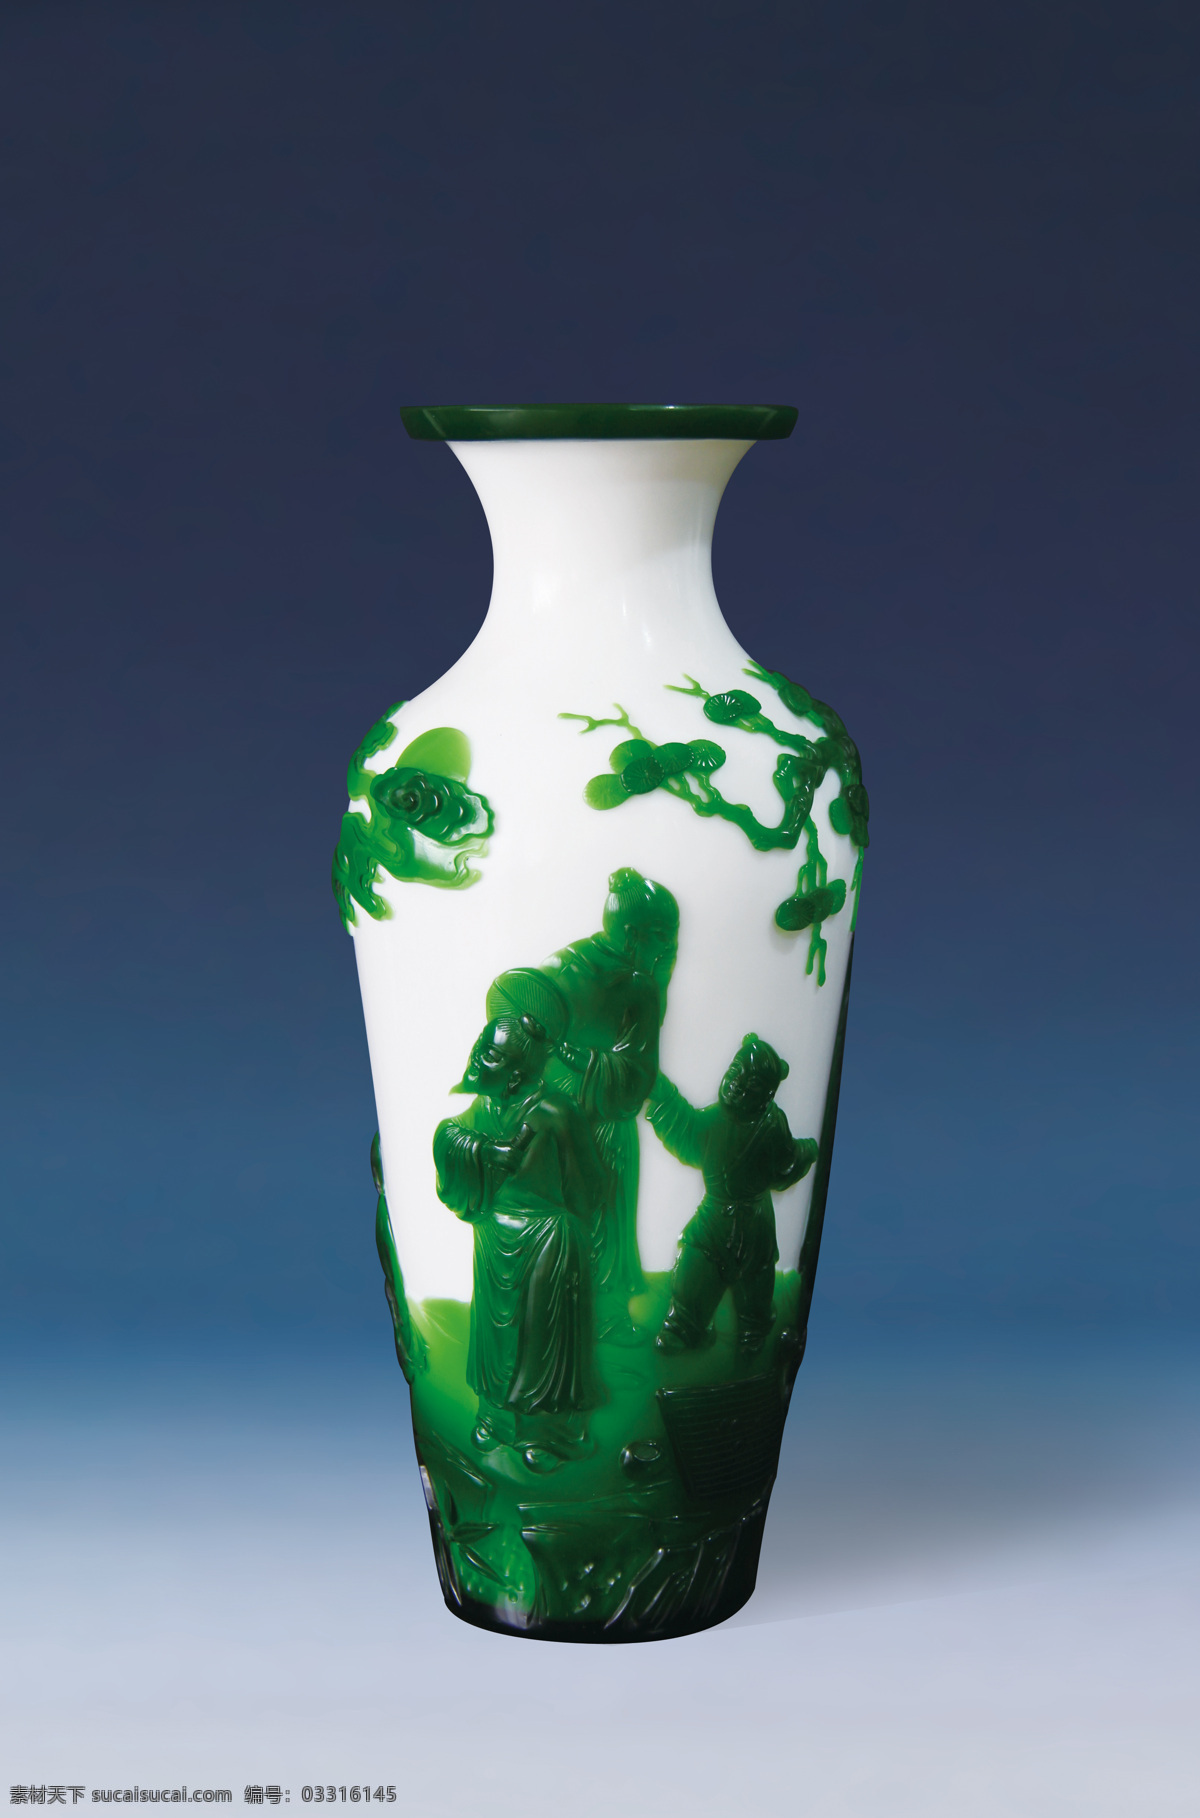 料器 艺术品 料器雕刻 收藏 白套绿 艺术 雕刻 拍照 拍卖 传统艺术 文化艺术